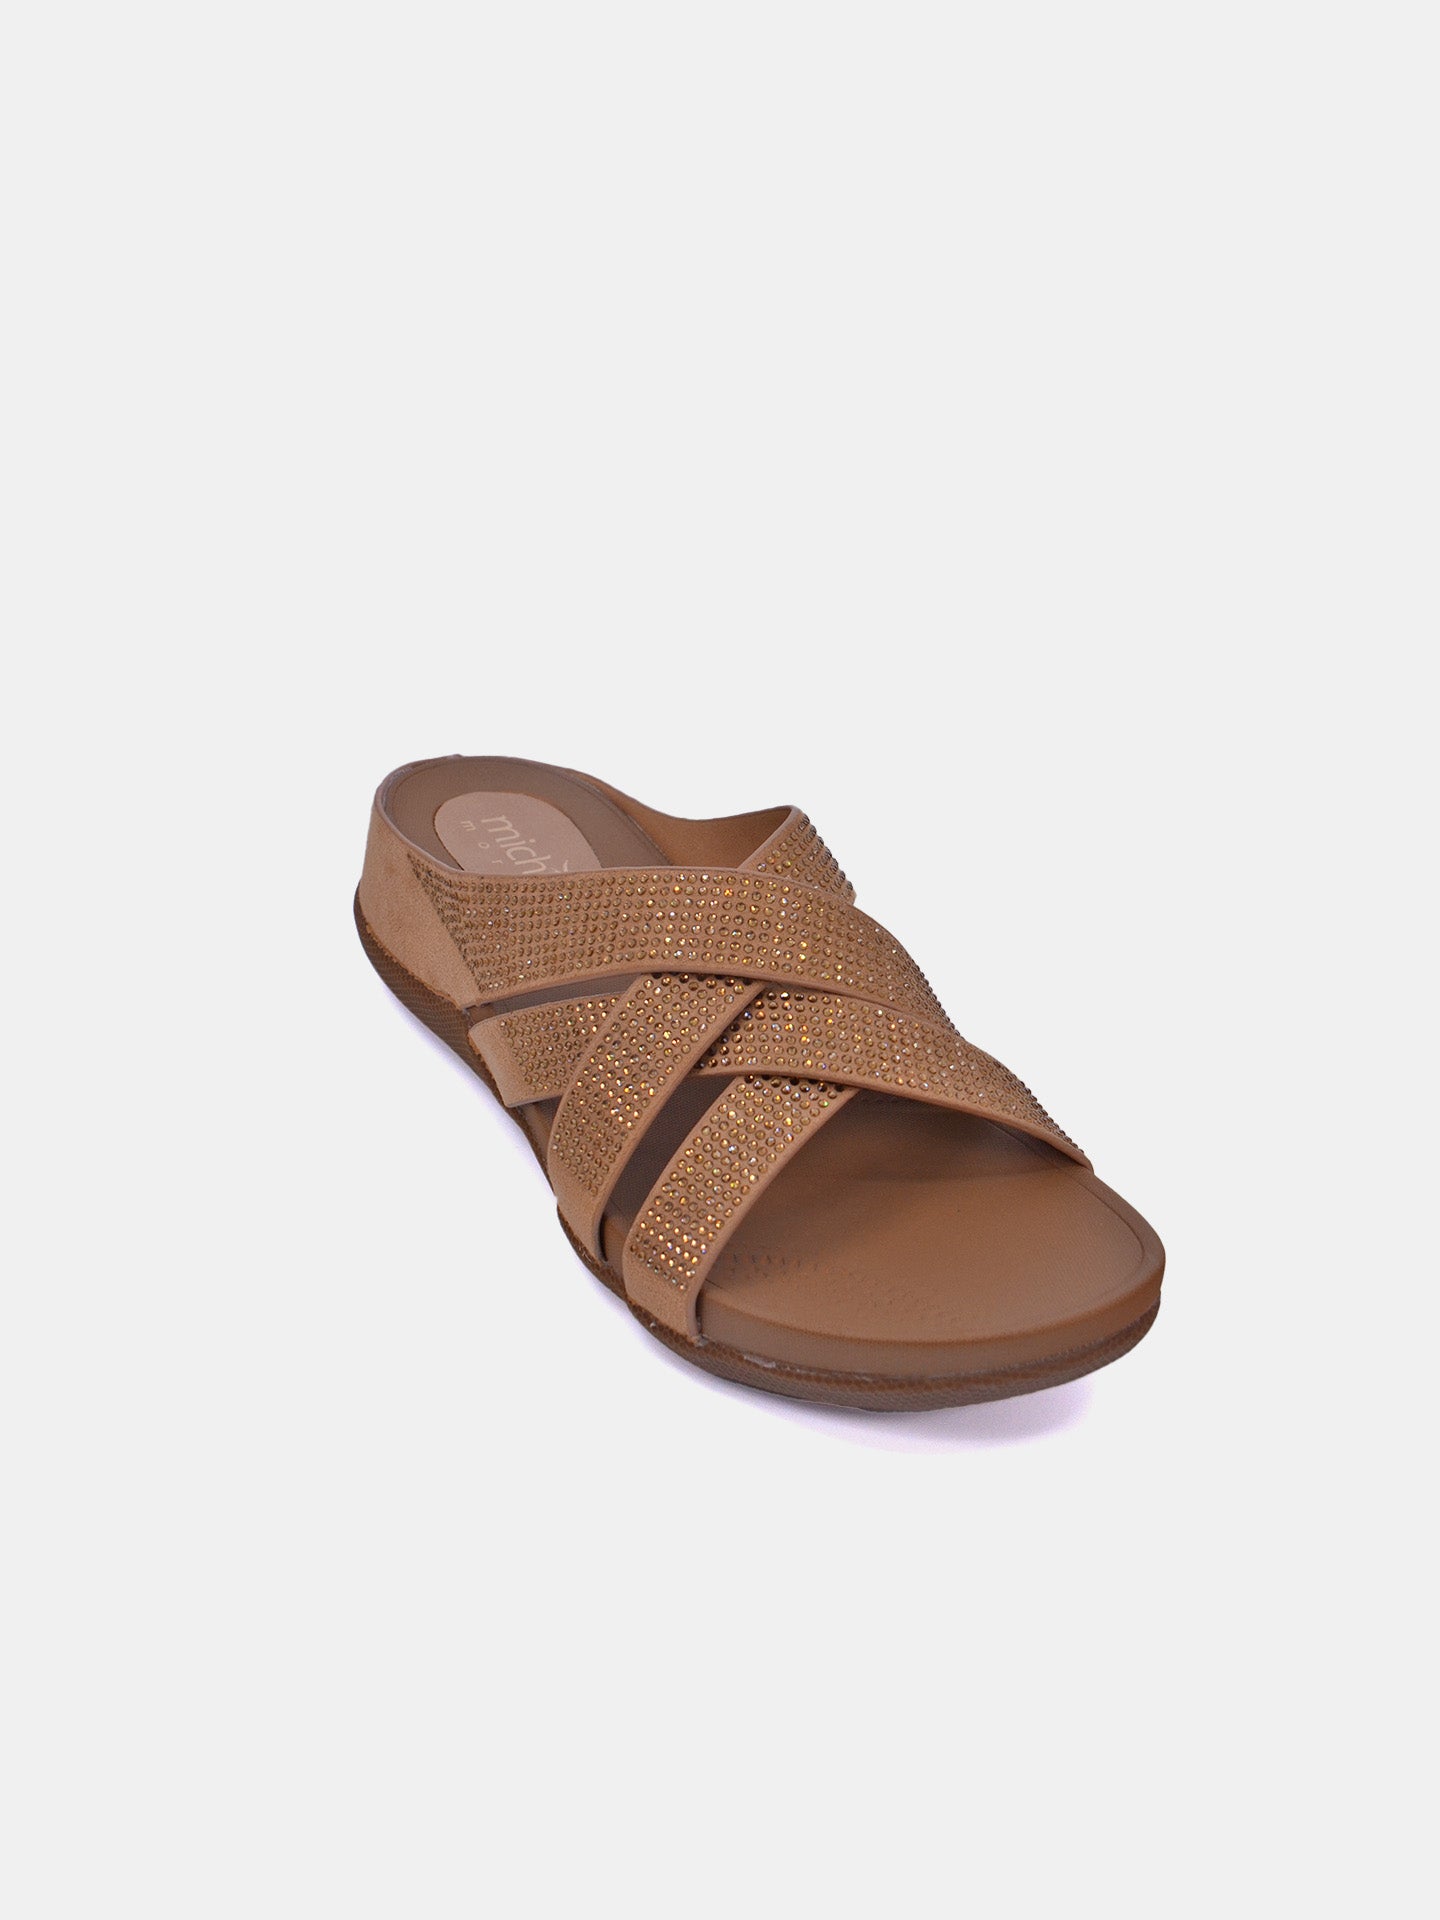 Michelle Morgan 114RC278 Women's Casual Sandals #color_Beige